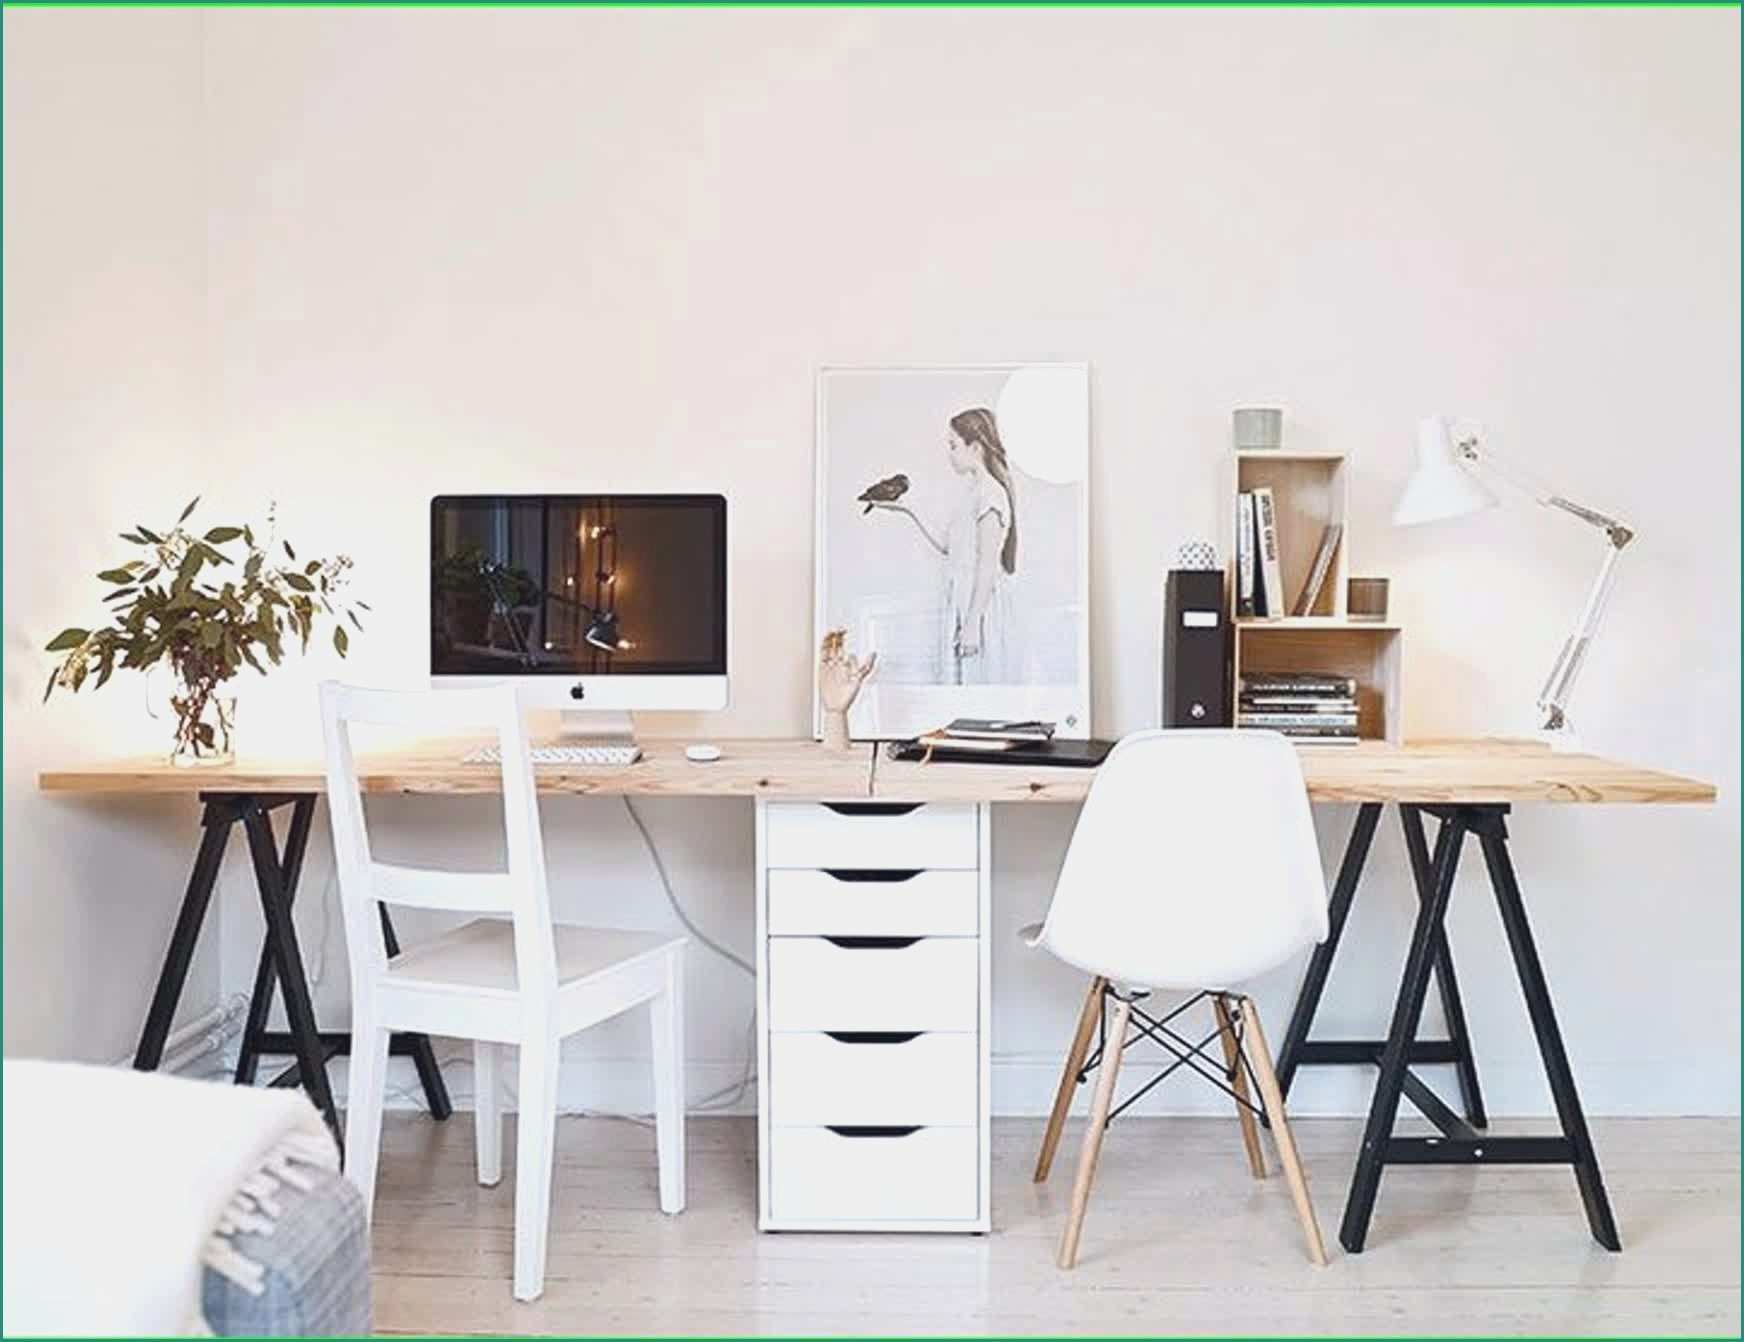 Cassettiera Camera Da Letto E Awesome Mobili Ikea Decorazioni Per La Casa